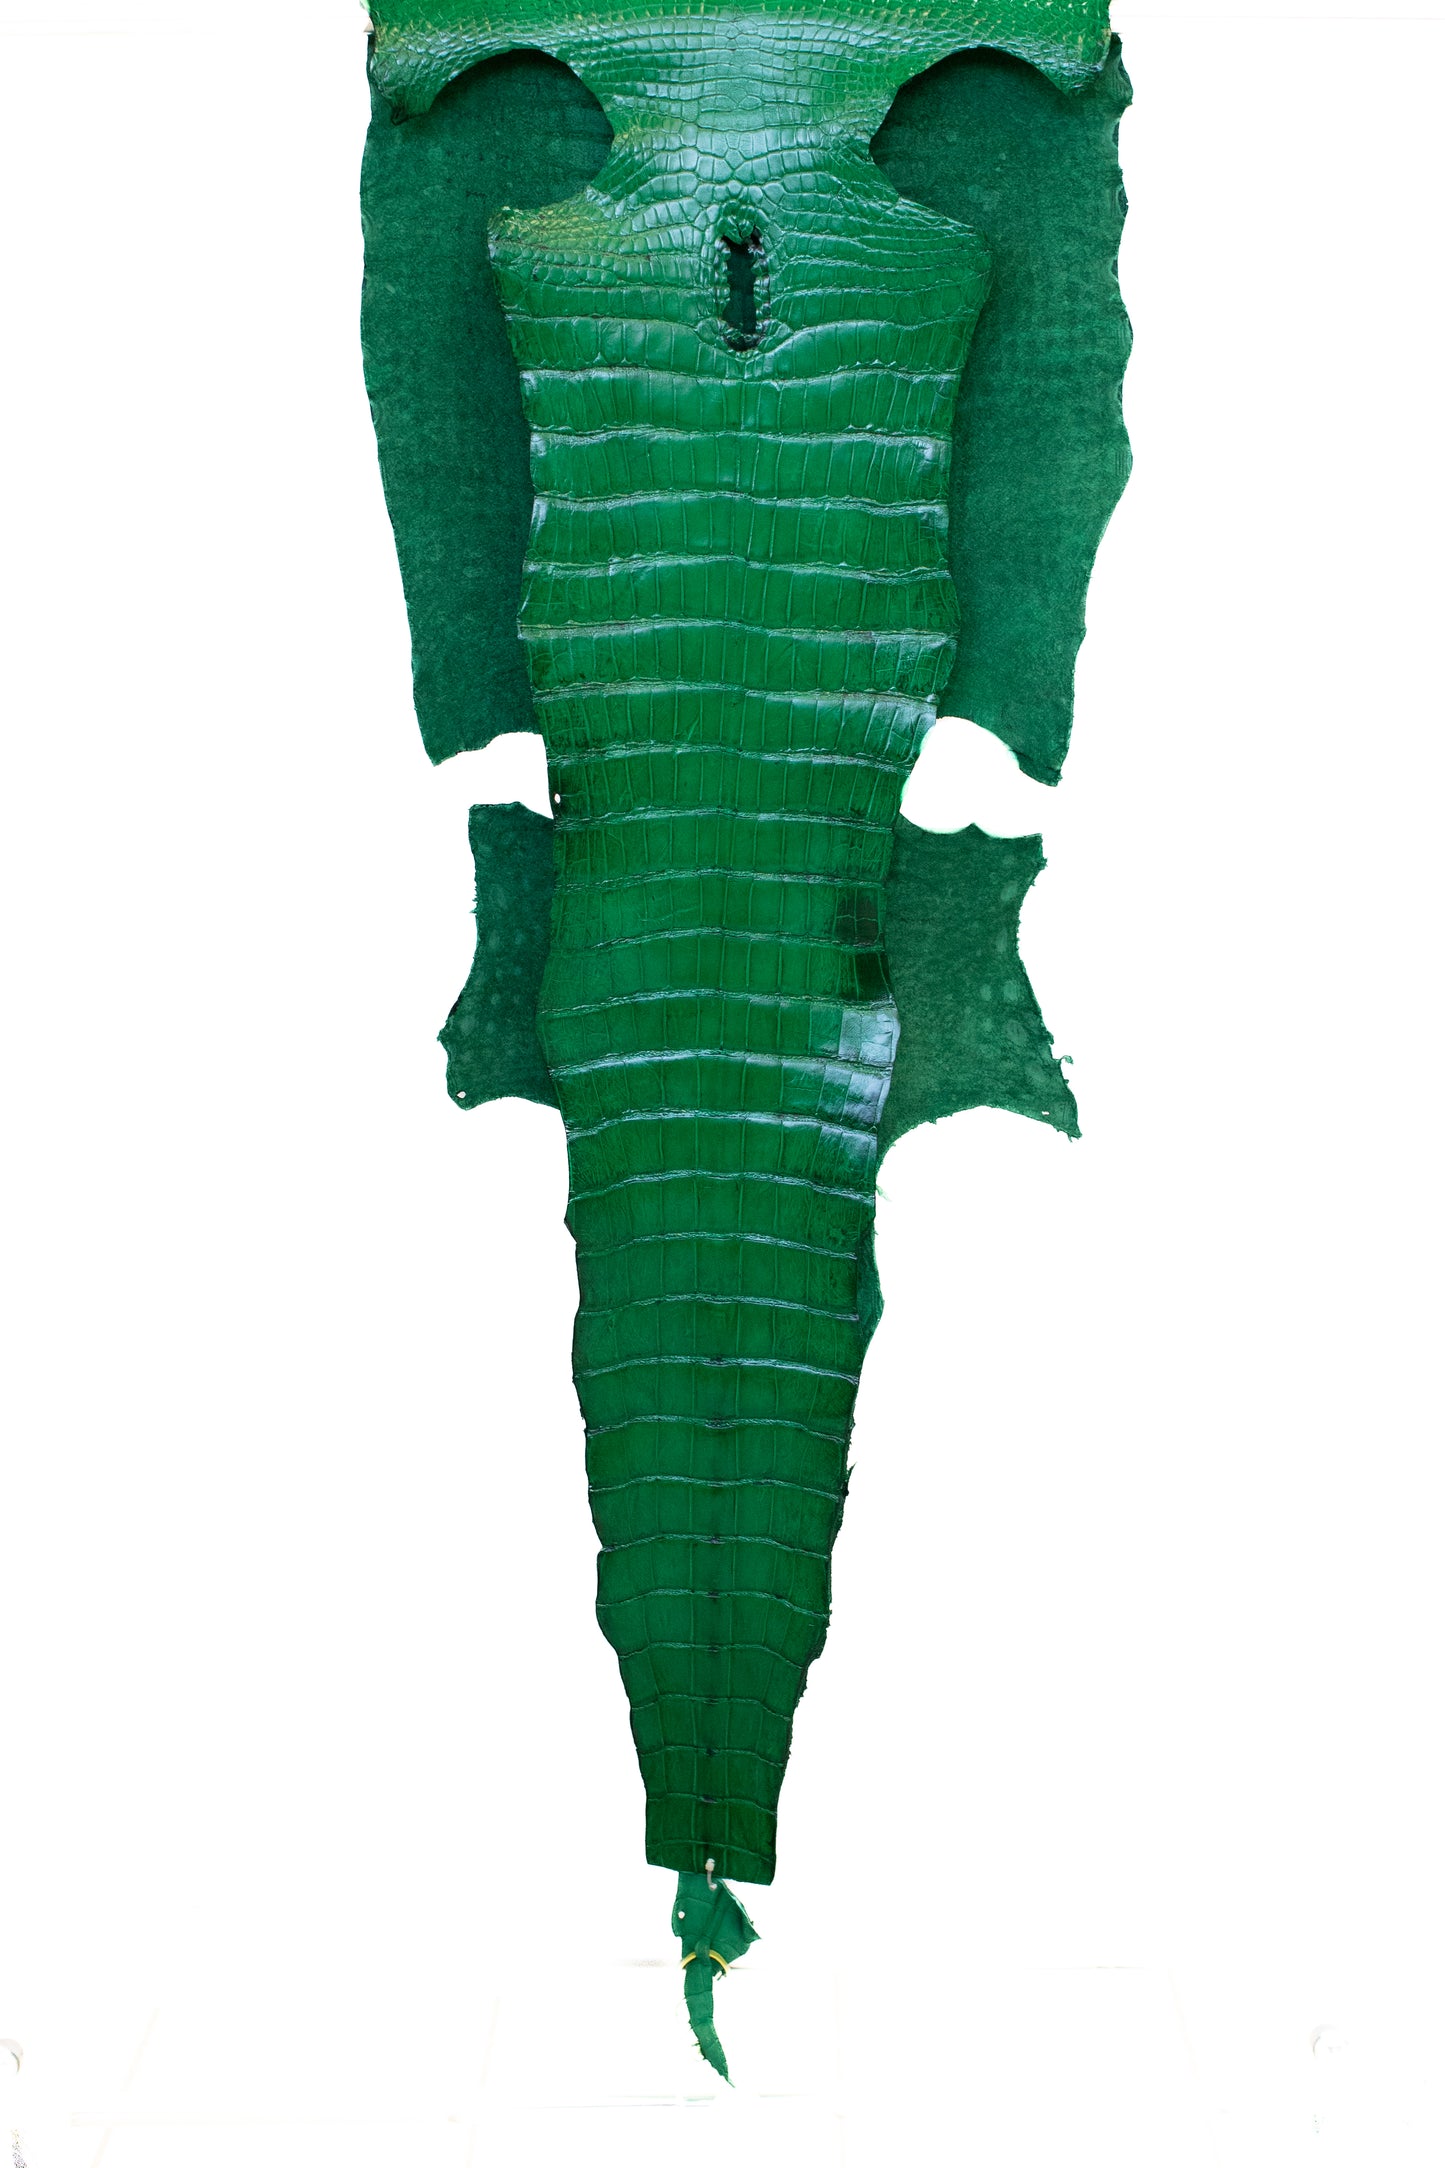 50 cm Grade 4/5 Libra Green Millennium Wild American Alligator Leather - Tag: LA22-0031255